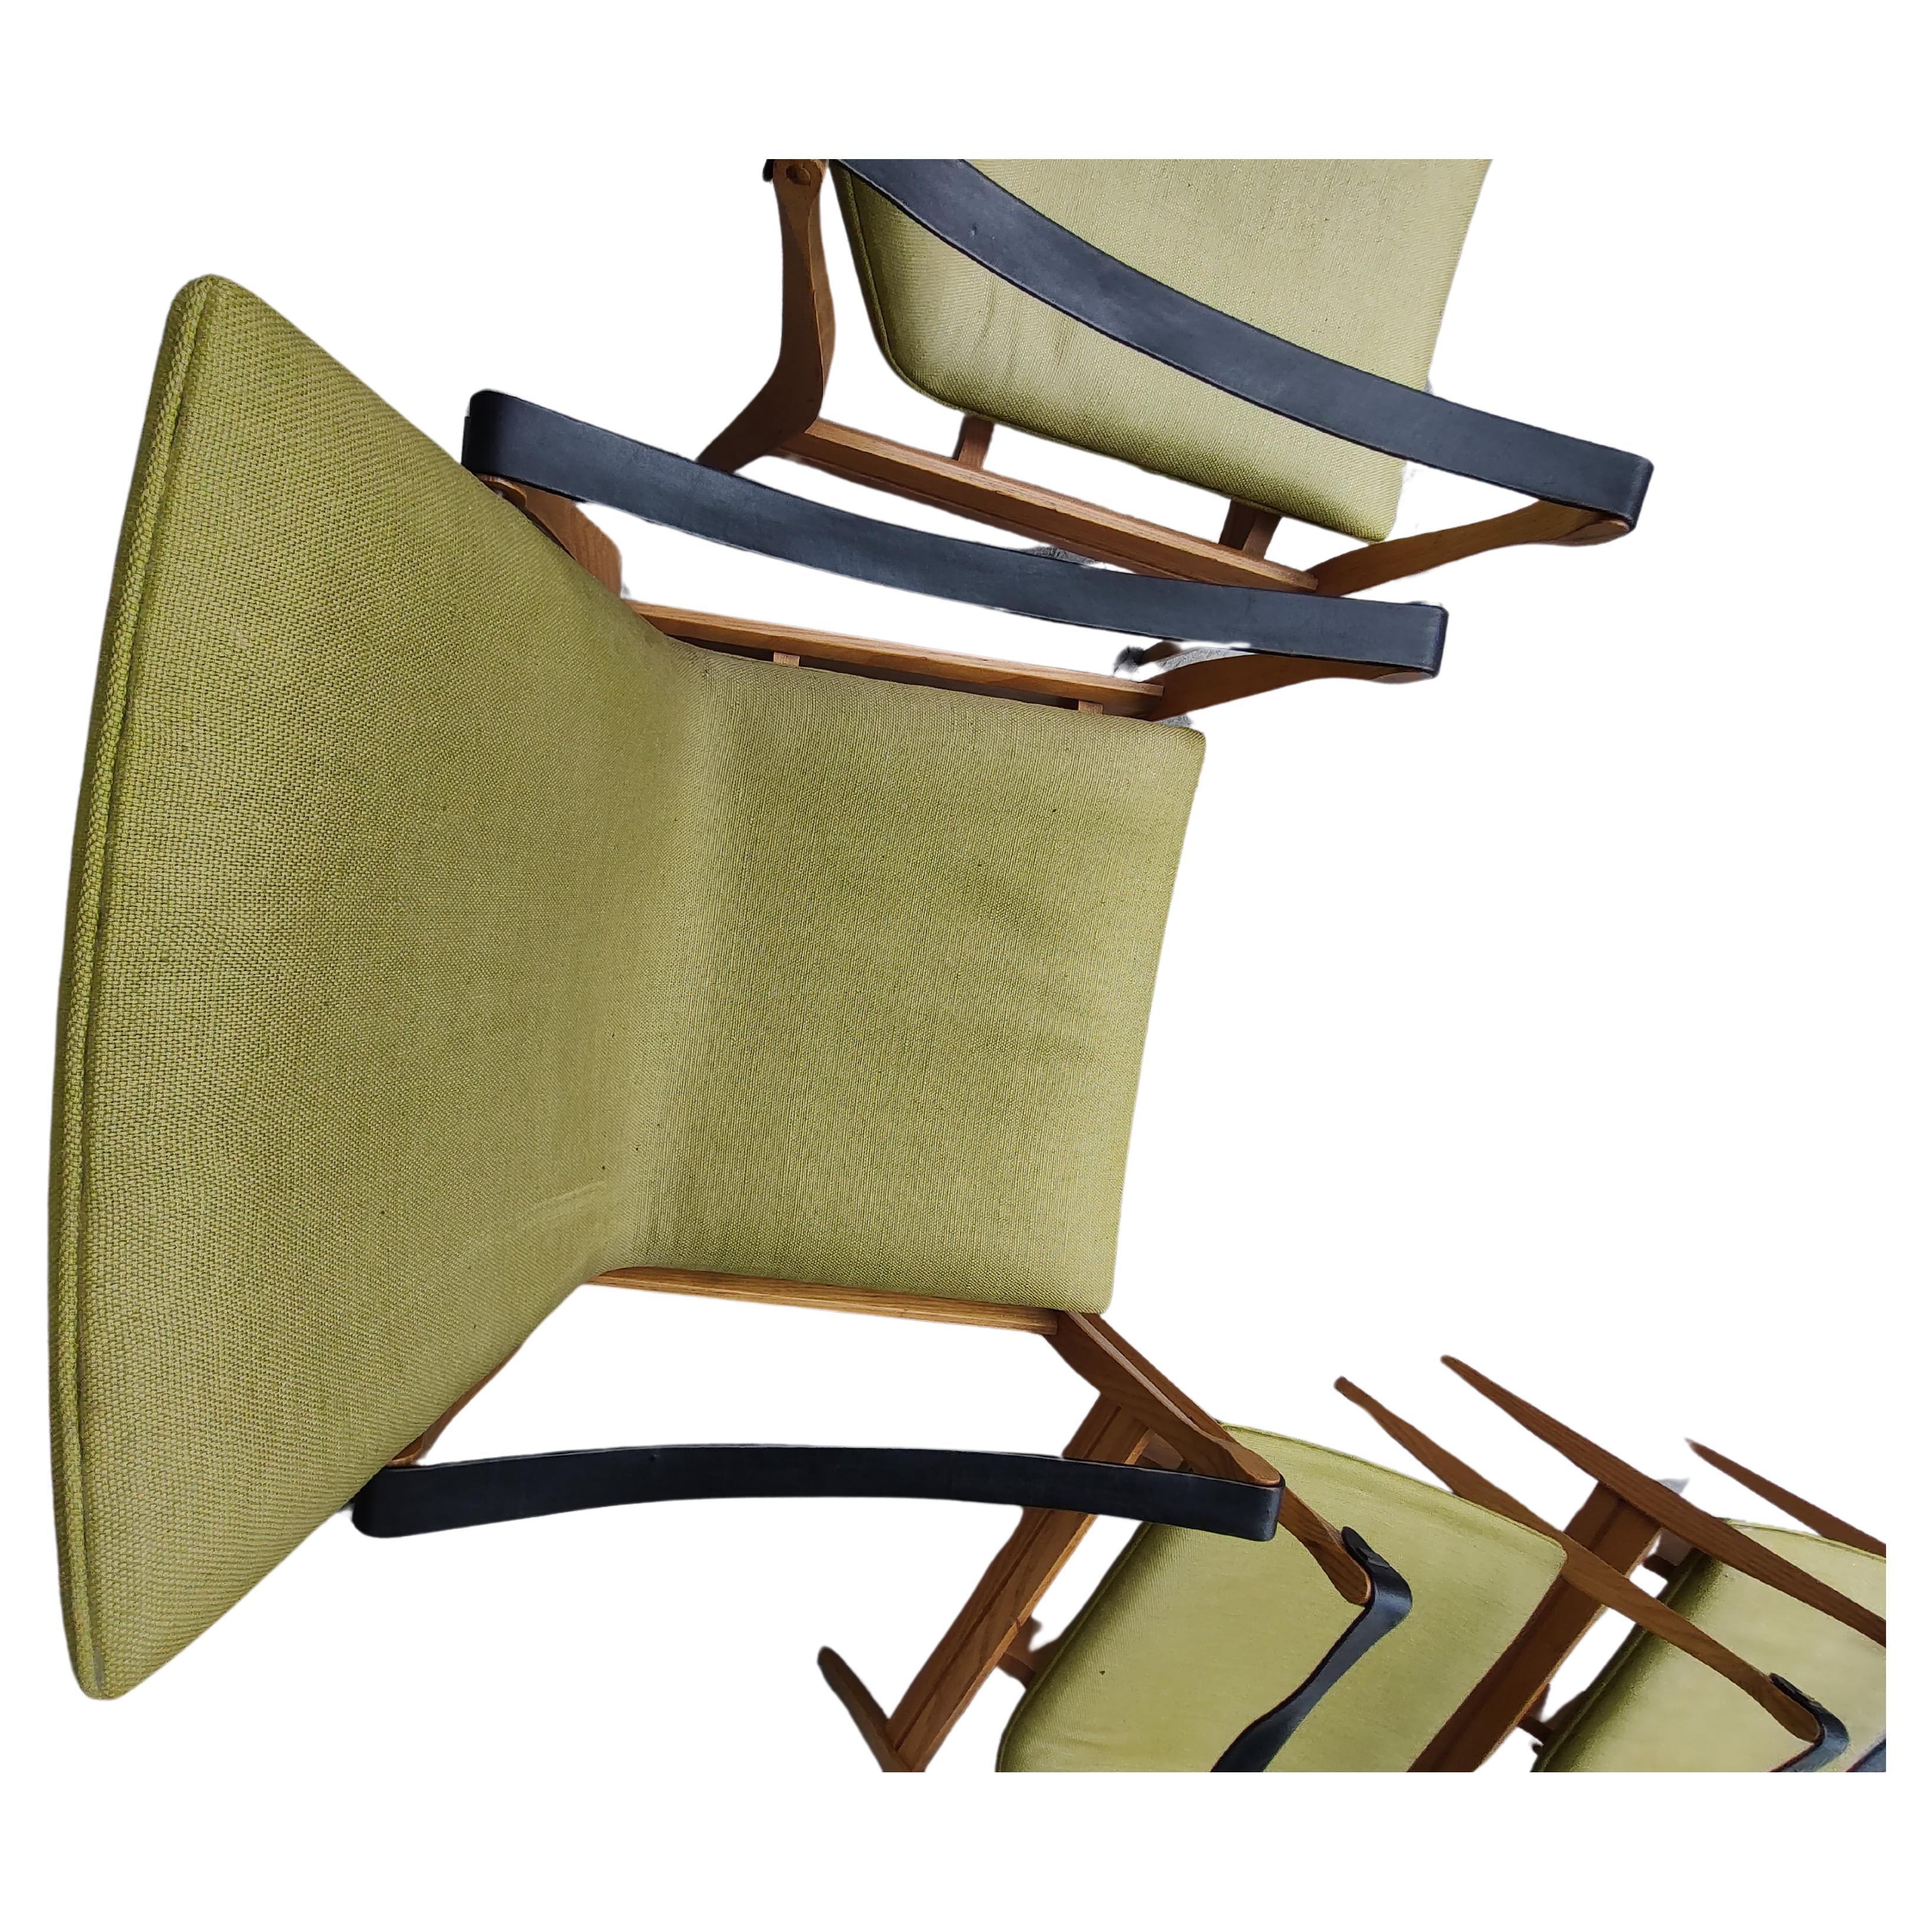 Fabelhaftes Paar Safari Chairs von Karen und Ebbe Clemmensen für Fritz Hansen. Rahmen aus Esche mit schwarzen Lederriemen. Grüner Stoff ist gut und stark, ohne Schäden, aber ein wenig Sonne gebleicht. Messingakzente, mit denen die Lederriemen an den